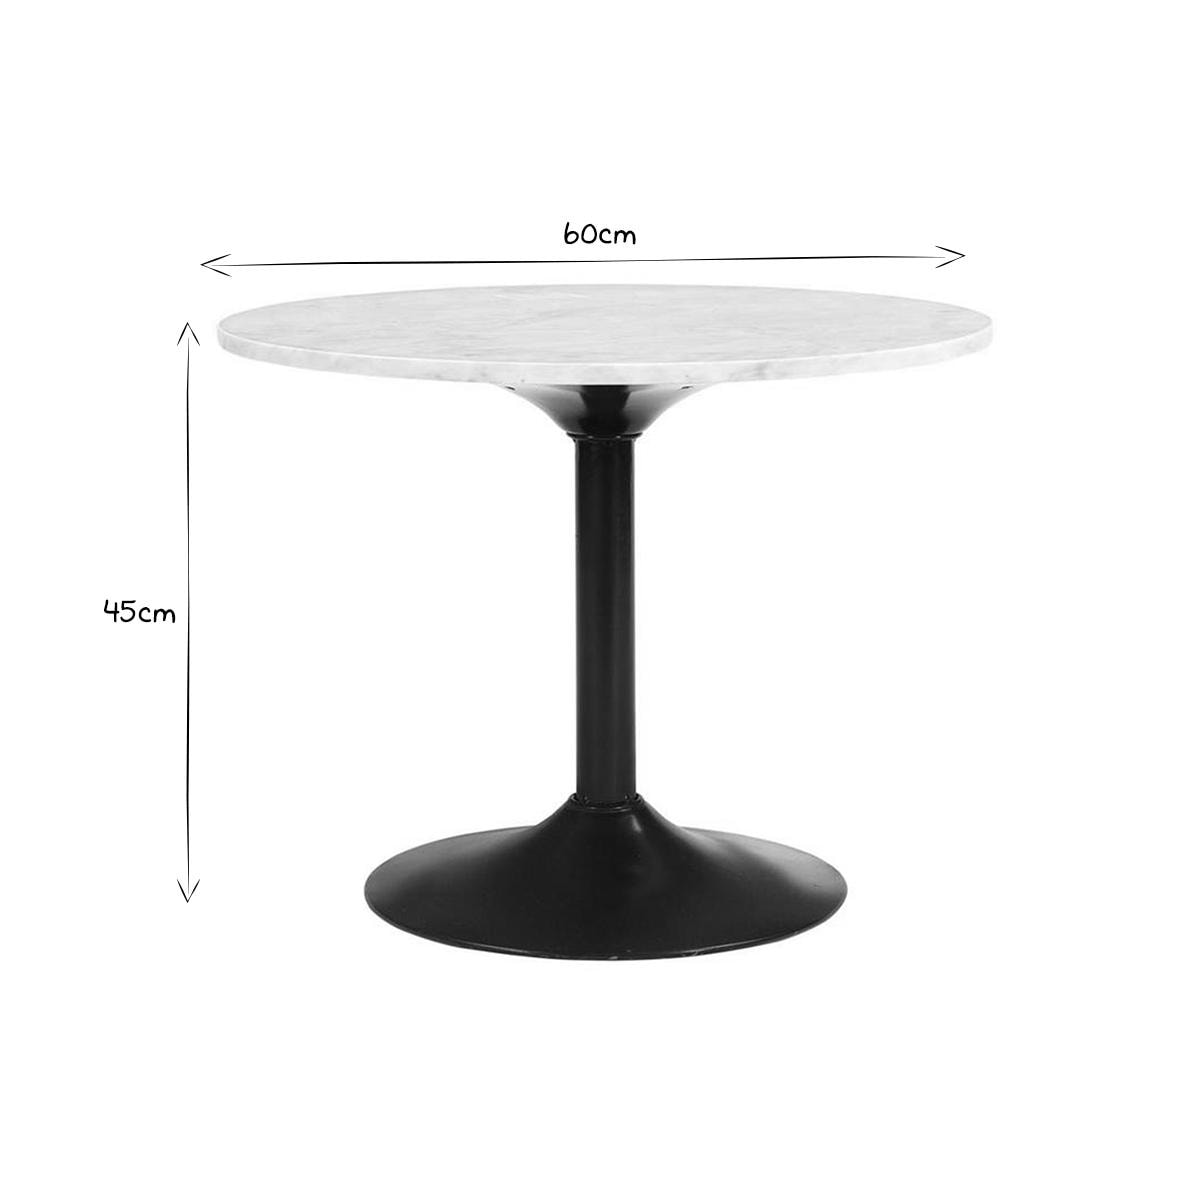 Table basse en marbre et métal noir D60 cm COPEN